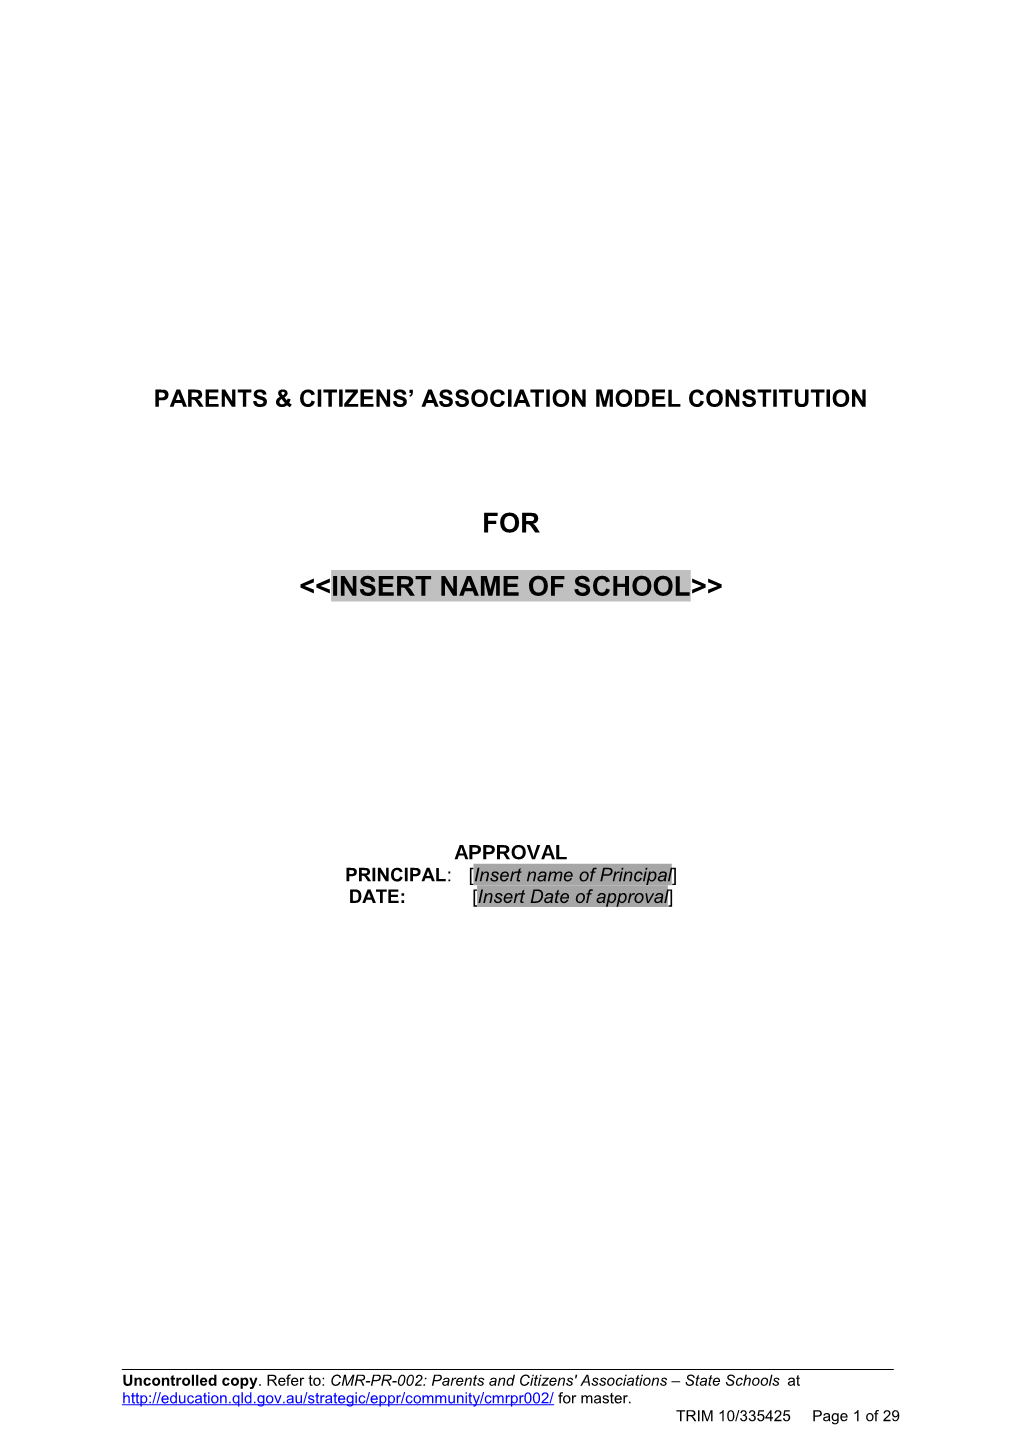 Parents & Citizens Association Model Constitution